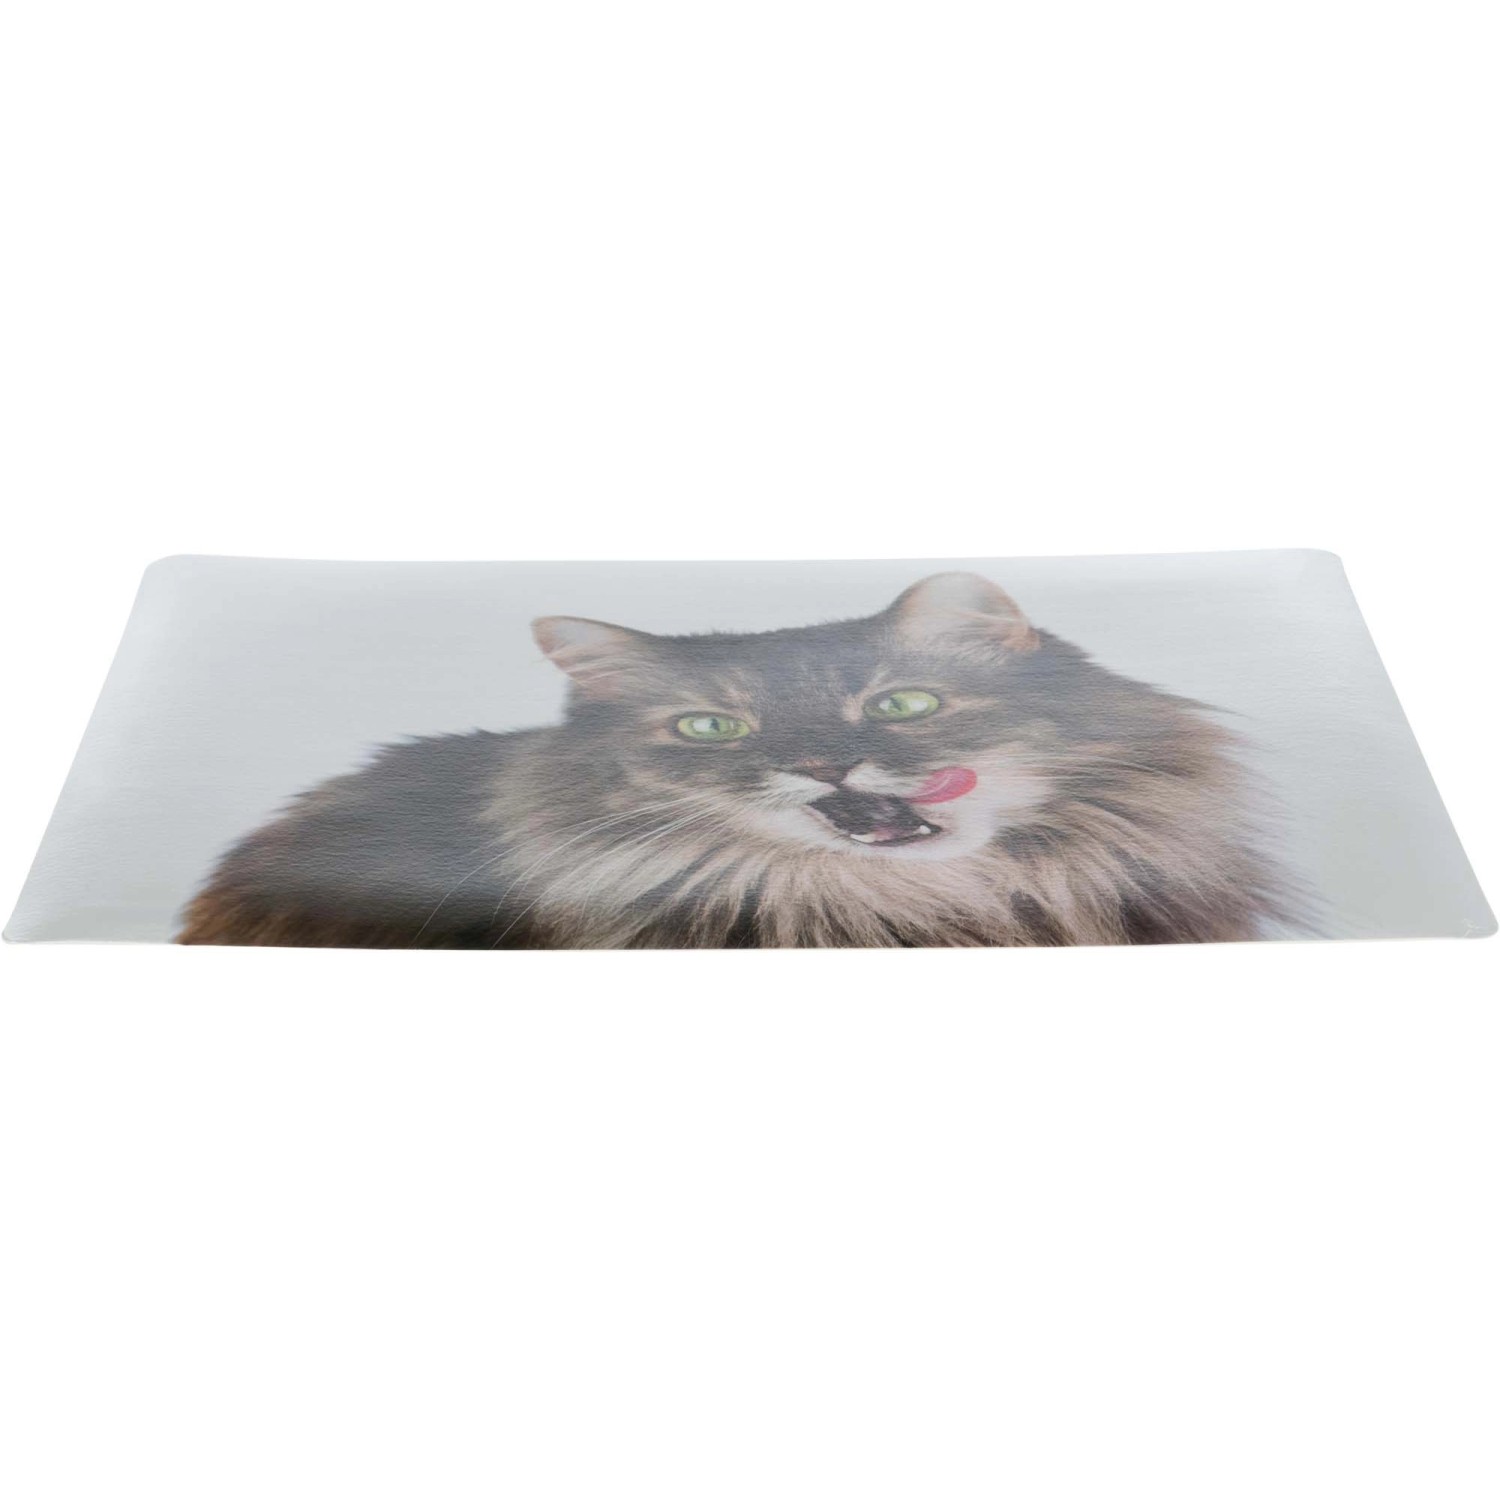 Jollypaw Napfunterlage Katze 44 × 28 cm